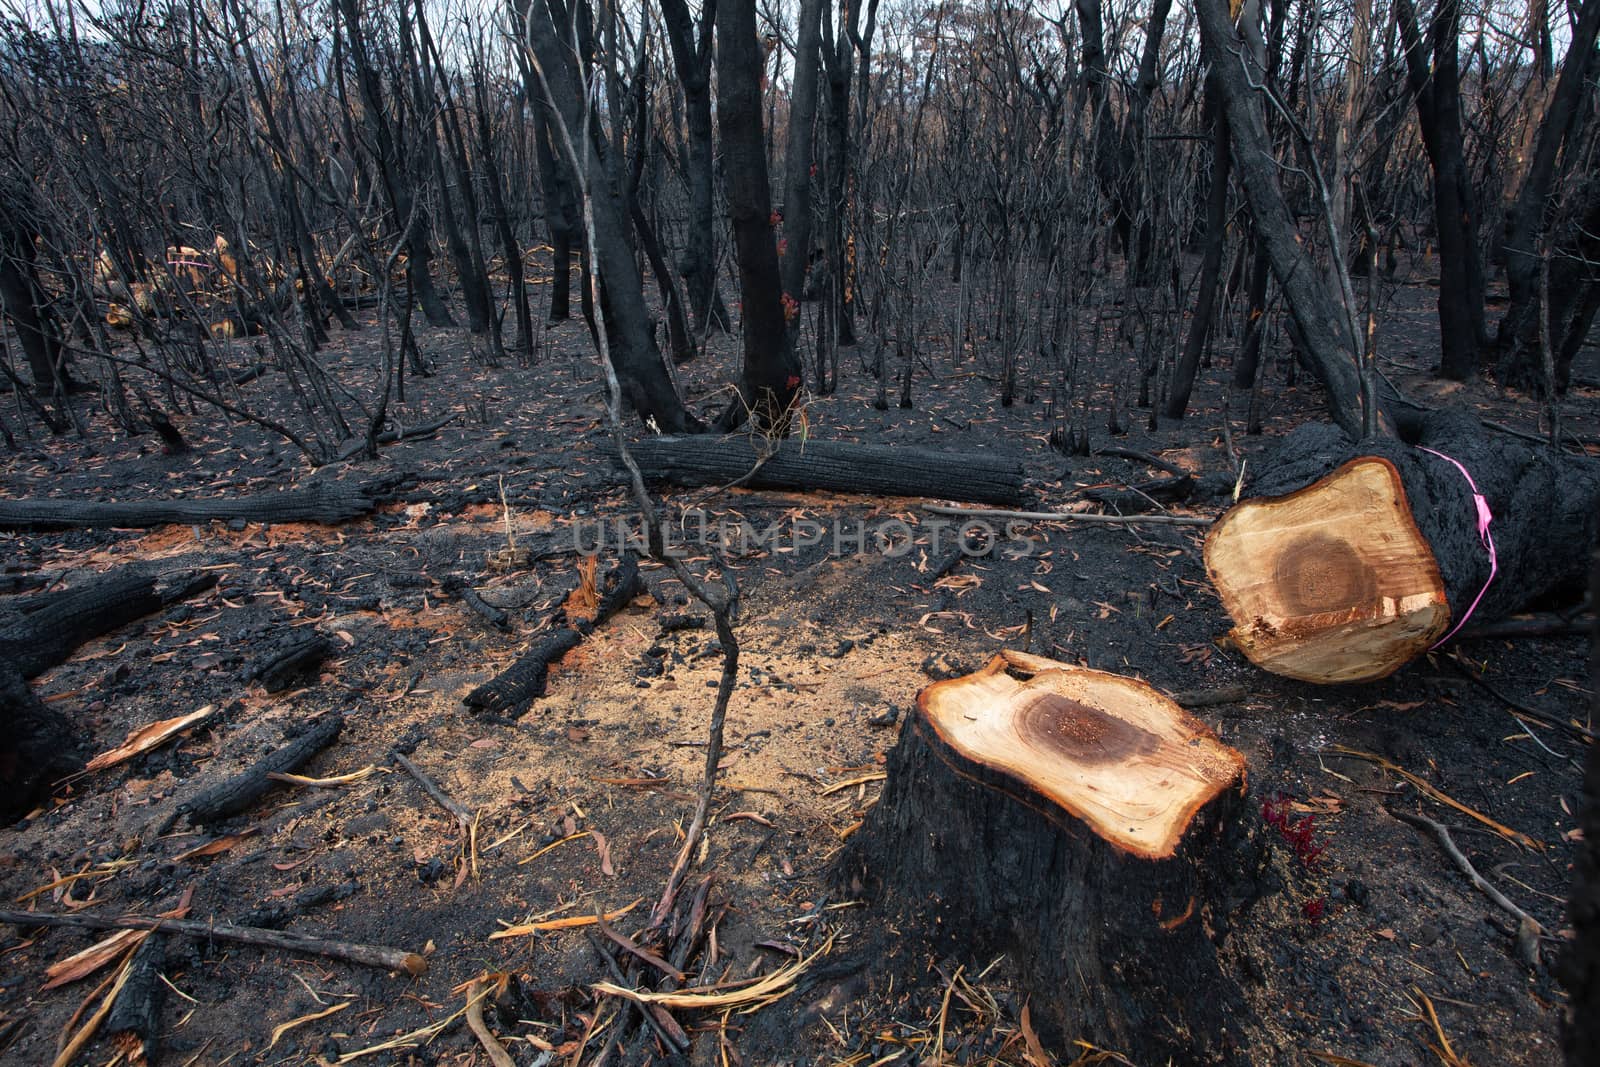 A dangerous tree felled after bush fires in Australia by lovleah